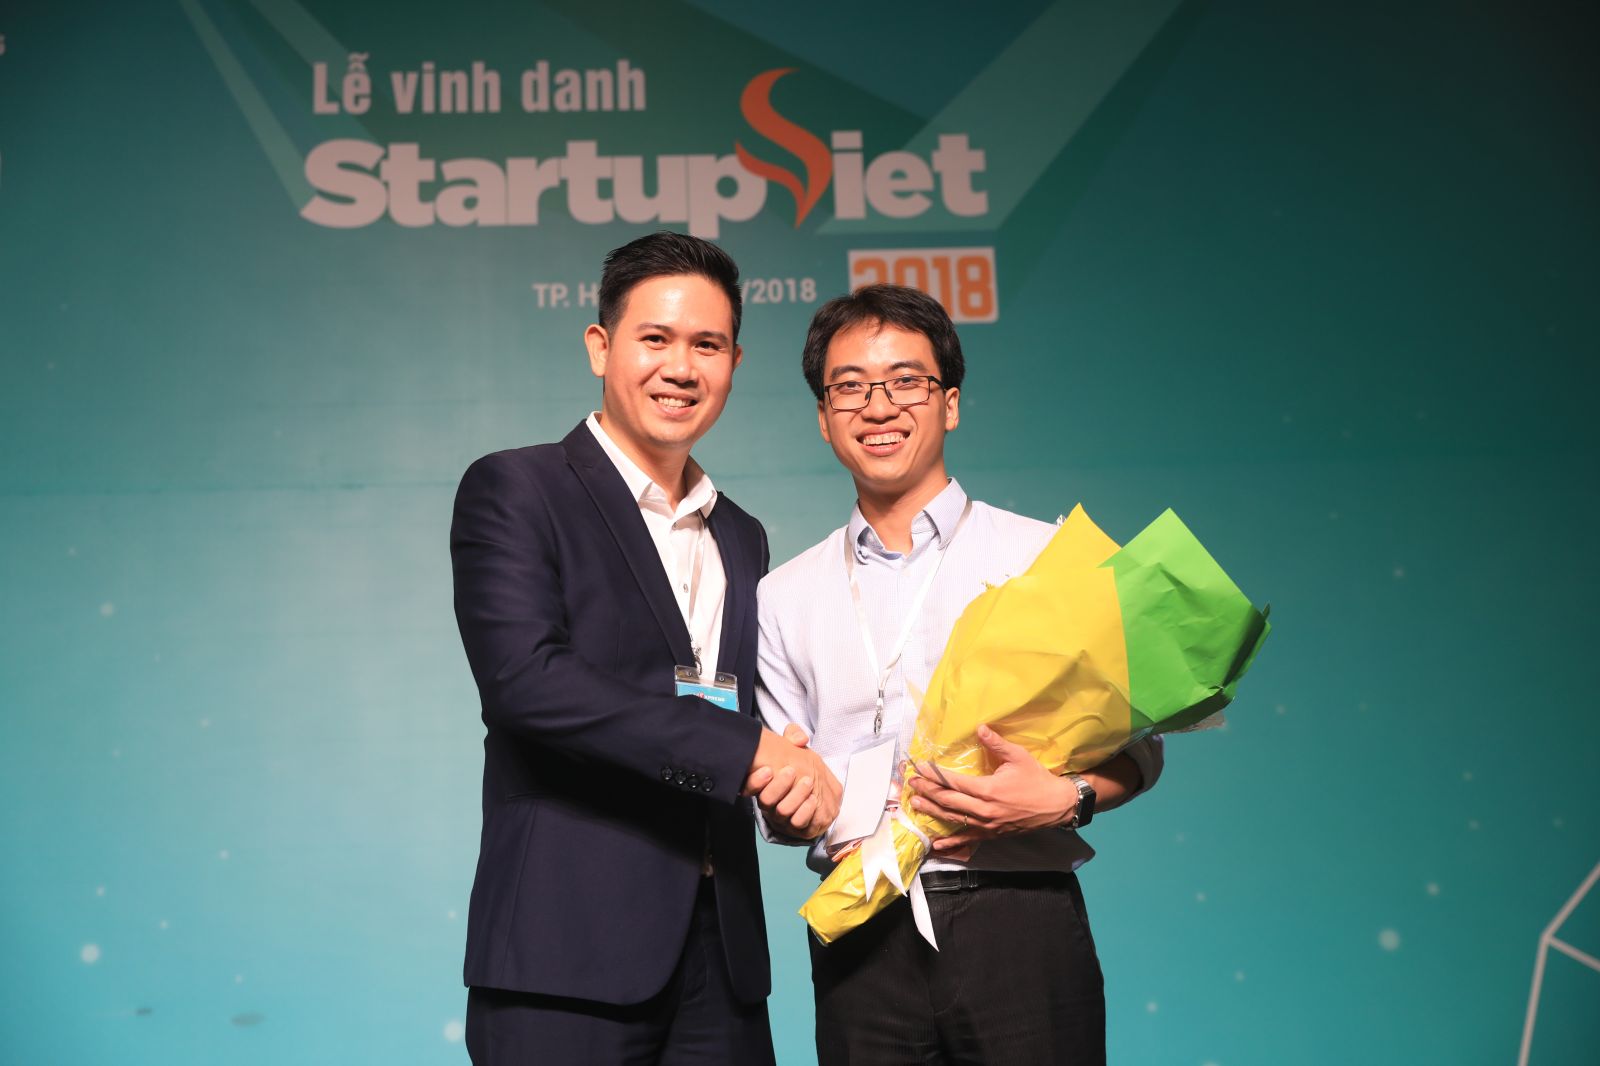 Chủ tịch Asanzo Phạm Văn Tam bất ngờ quyết định rót 5 tỷ đồng cho Datamart ngay tại Gala chung kết Startup Việt 2018.